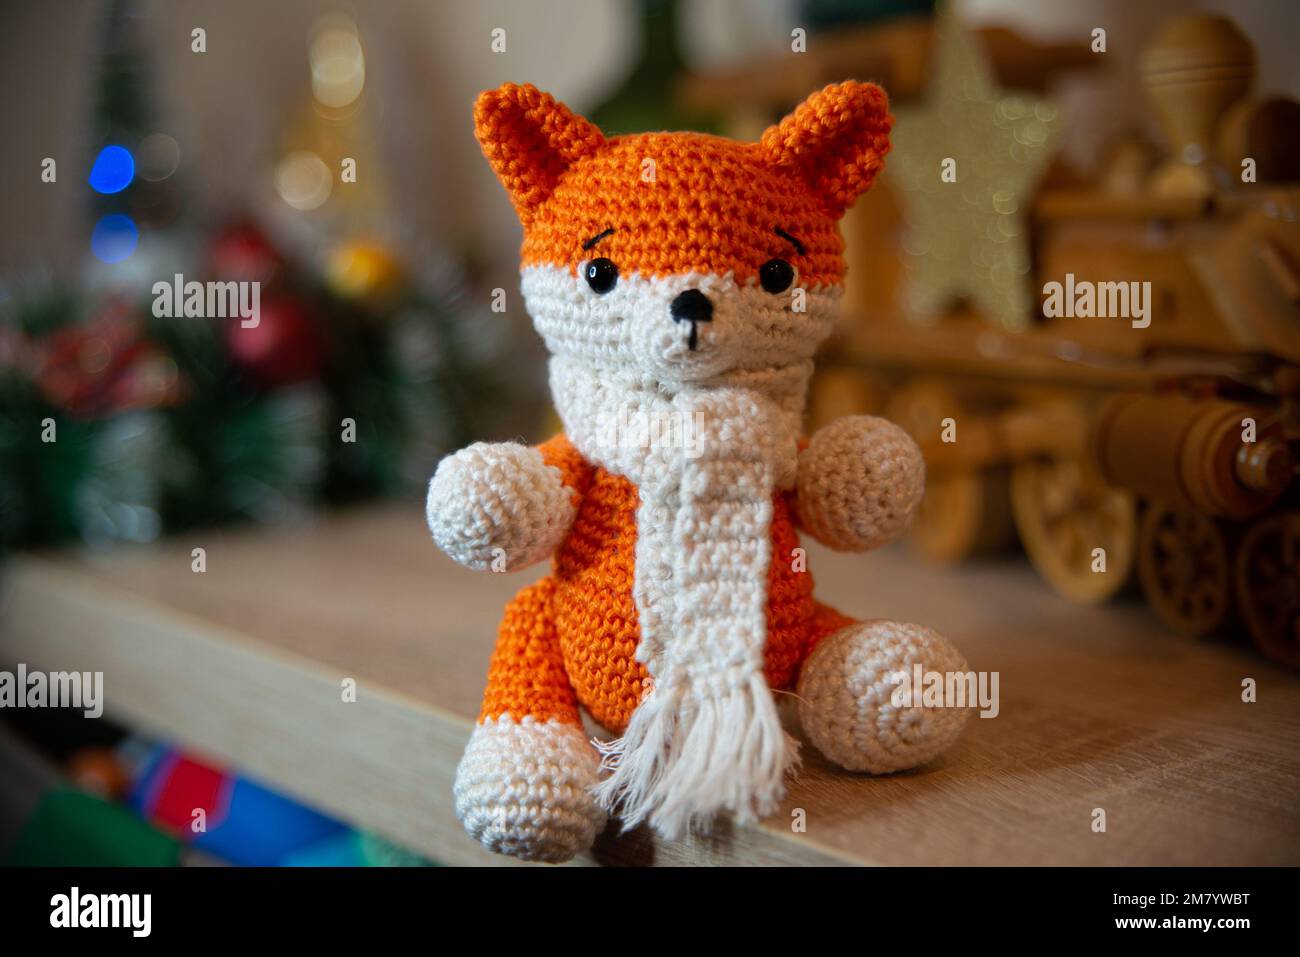 Crochet volpe fatta a mano con sciarpa in inverno con decorazioni natalizie Foto Stock